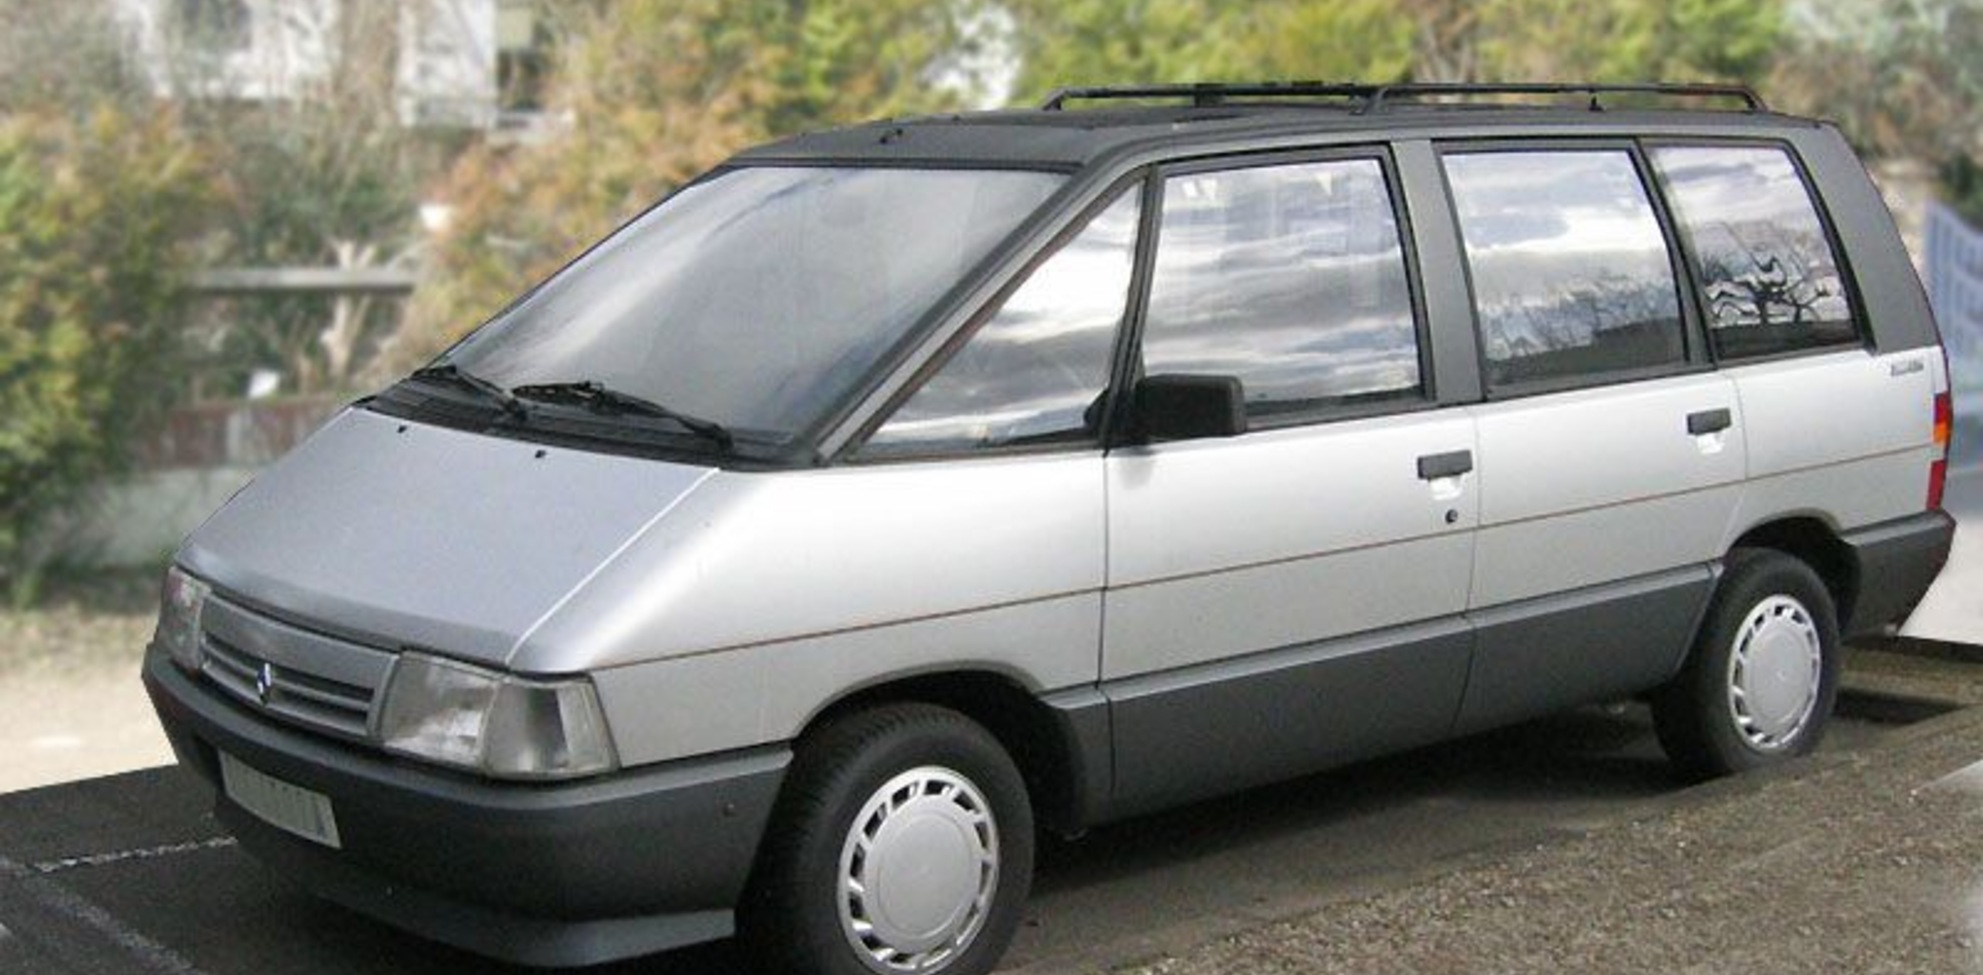 Renault Espace I (J11/13, Phase II 1988) 2.1 TD (88 Hp) 1988, 1989, 1990, 1991 